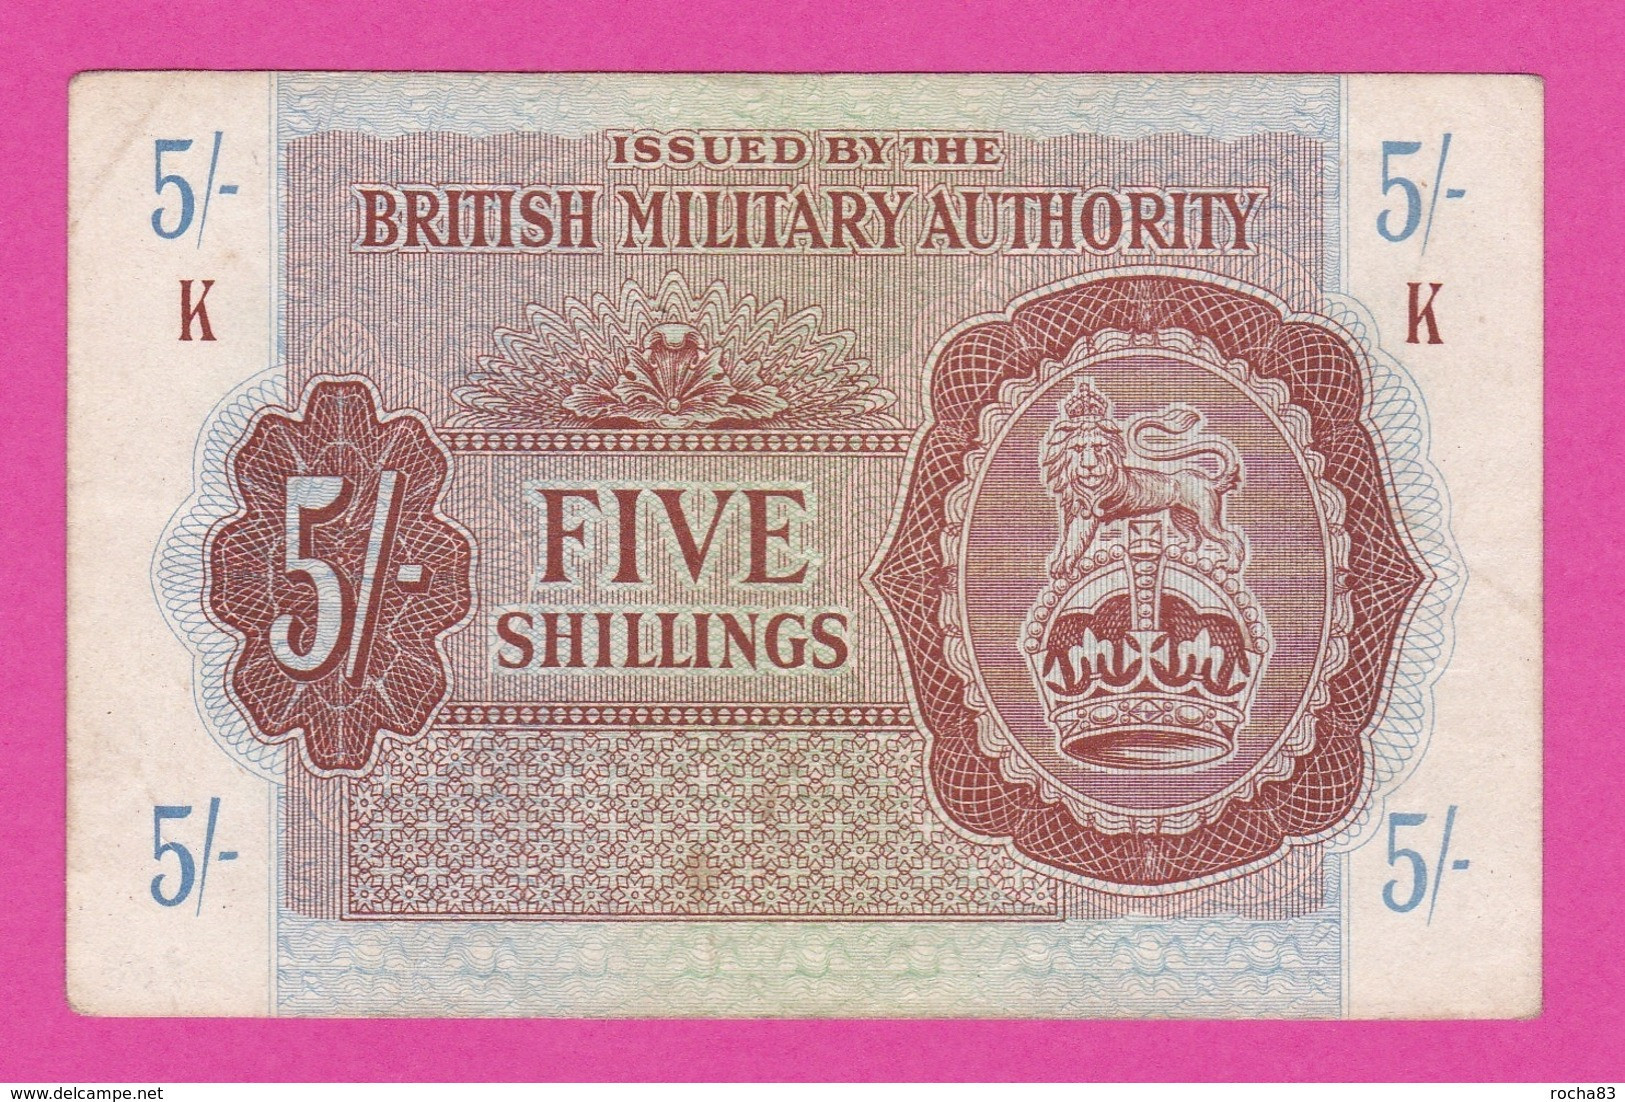 Billet ROYAUME UNI - Military Authority  5 Shillings  1943 -  Pick M 4 - Britse Militaire Autoriteit